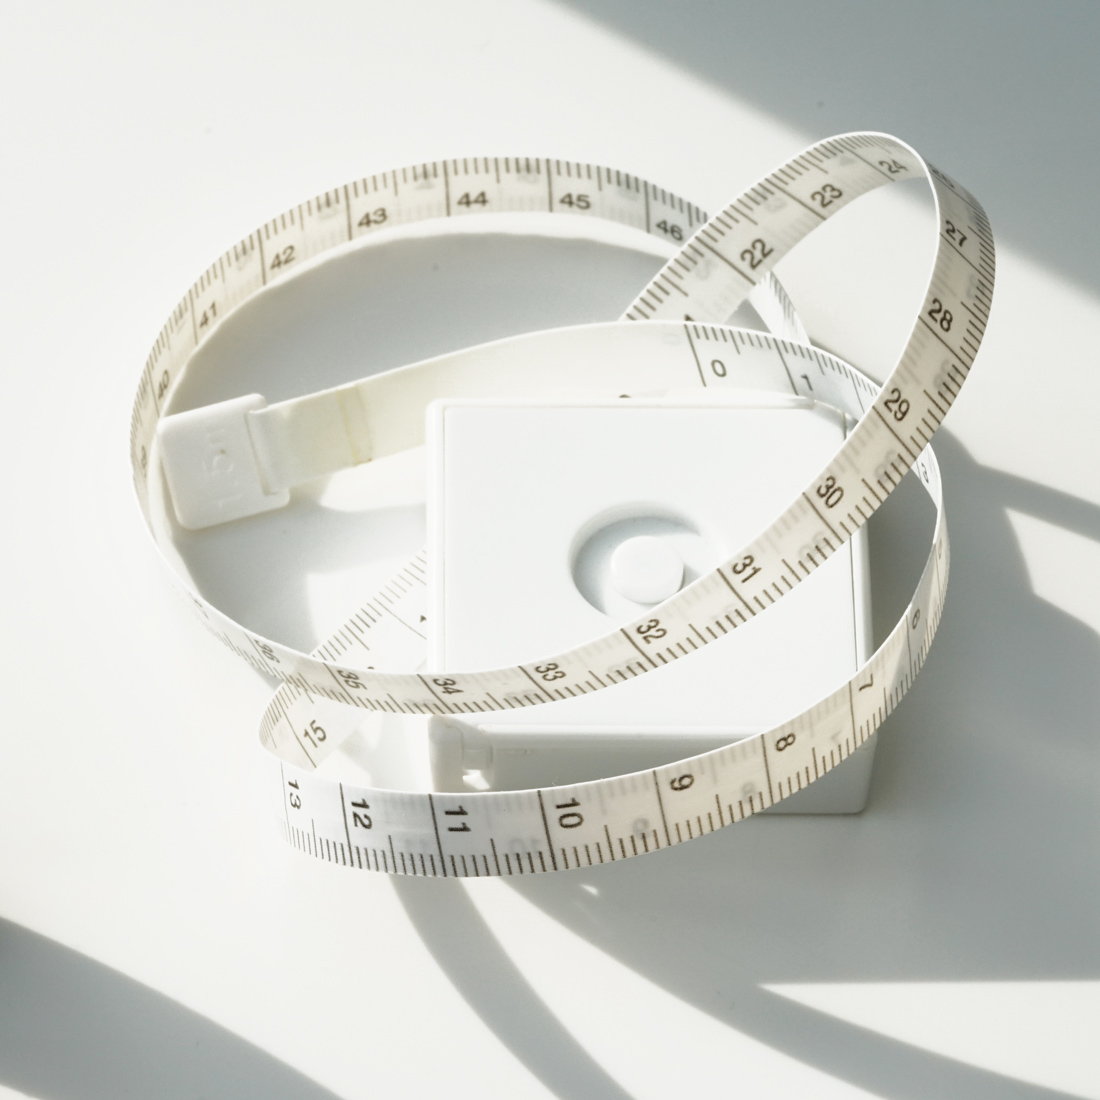 ring size measuring tape